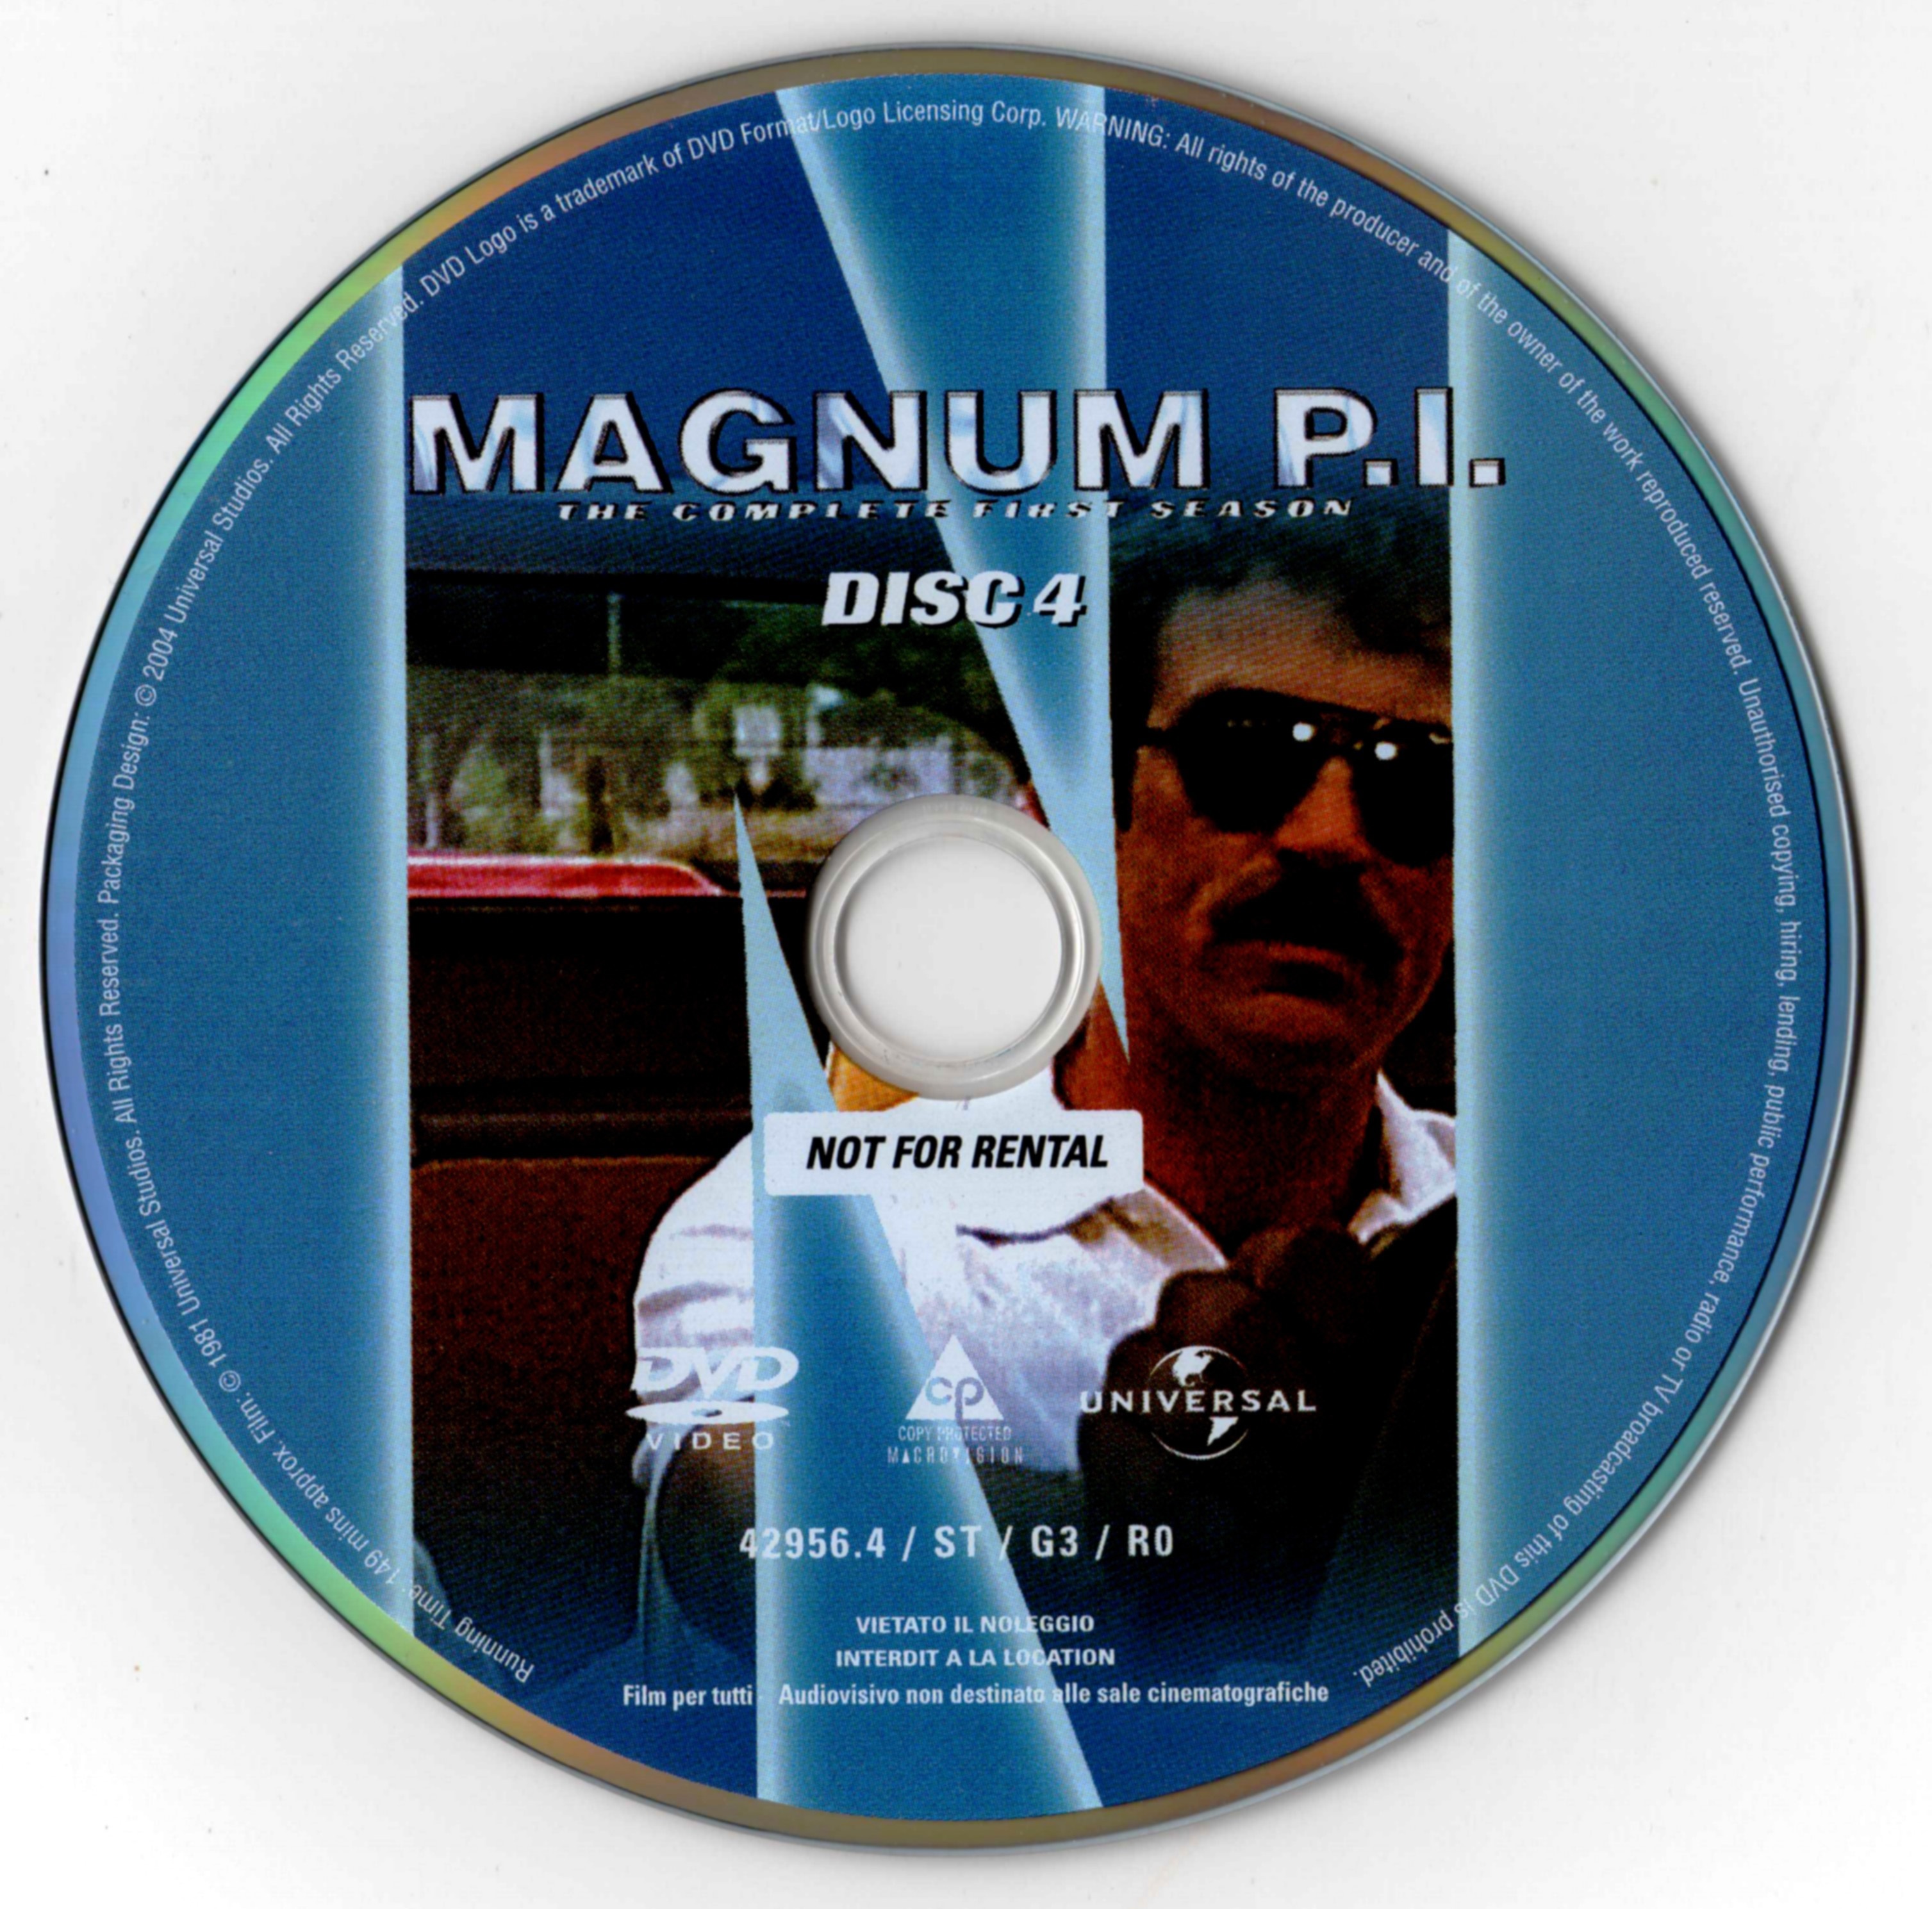 Magnum Saison 1 DISC 4